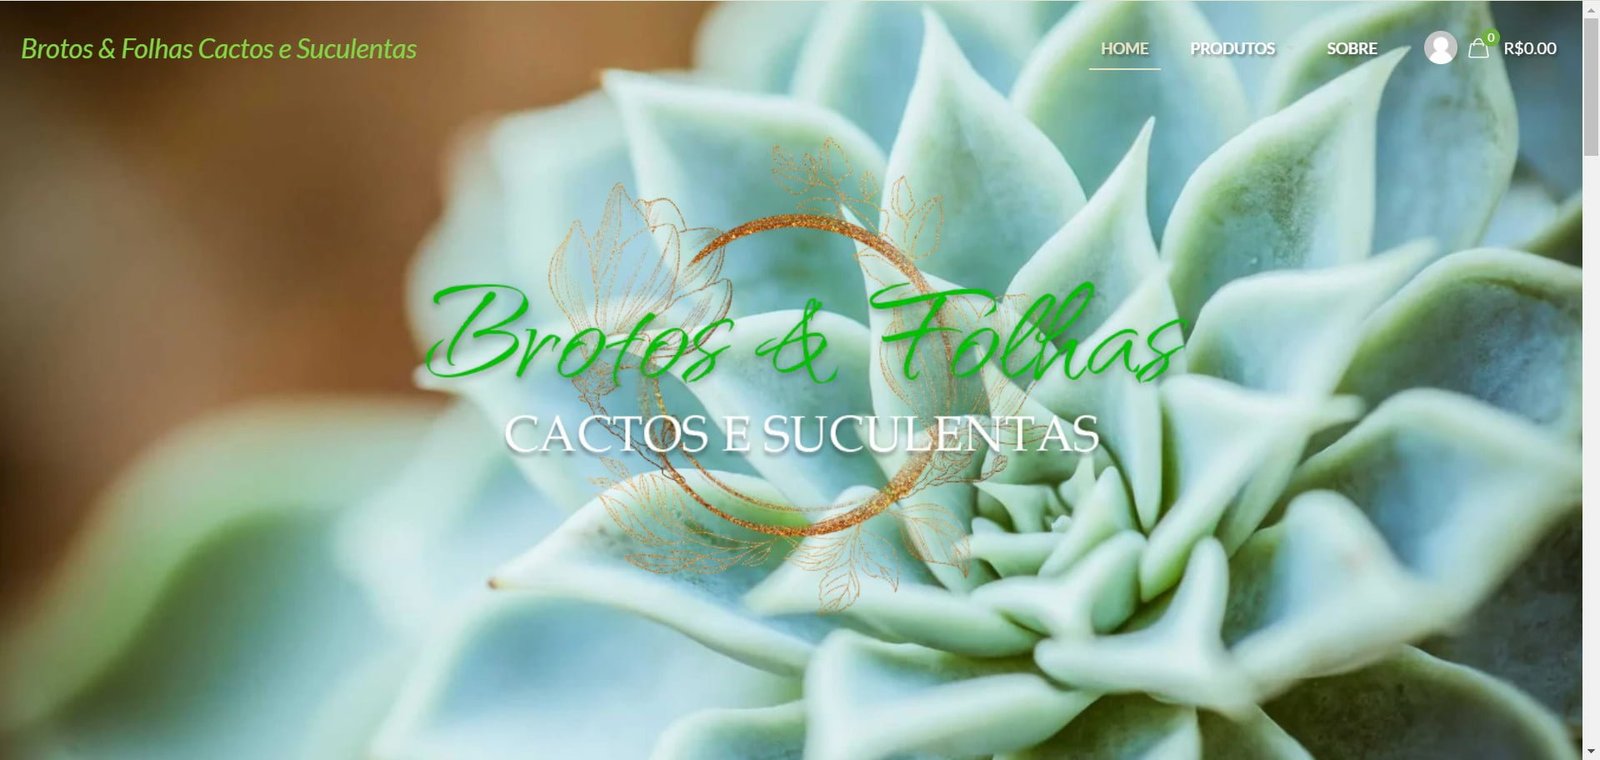 Brotos & Folhas Cactos e Suculentas